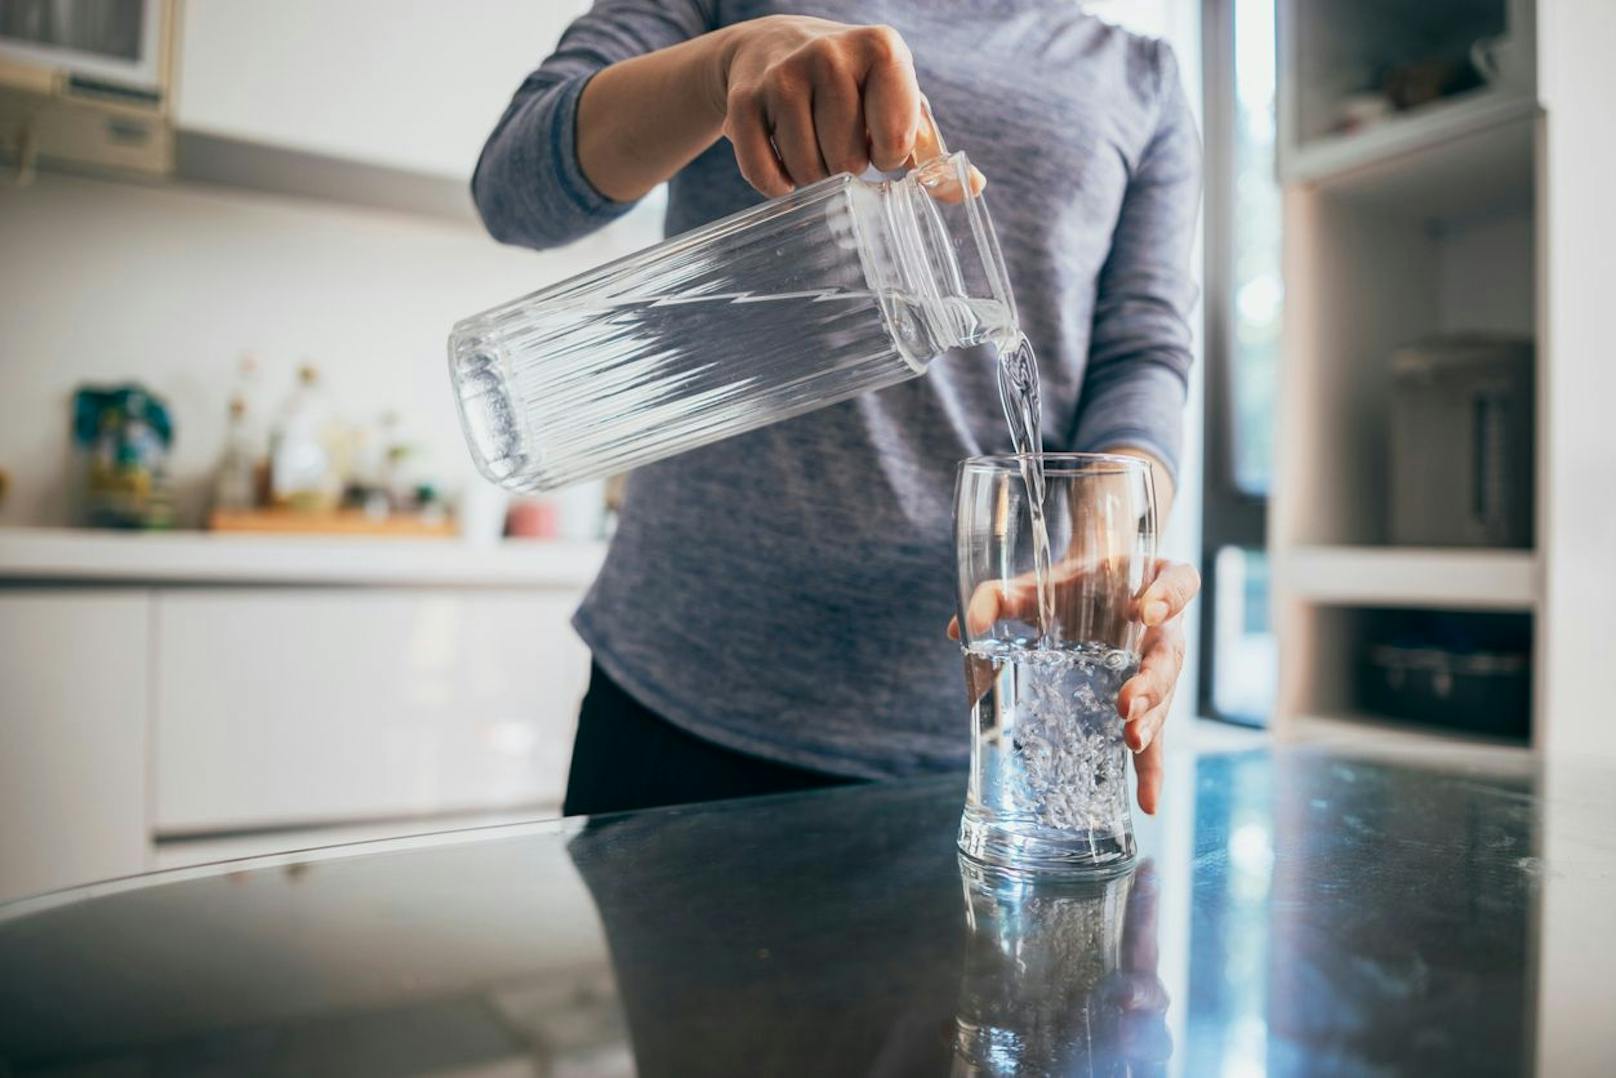 Bringe dich dazu, mehr Wasser zu trinken. Fülle deinen Magen allerdings nicht literweise voll und verteile deine Wasserrationen lieber über den Tag.